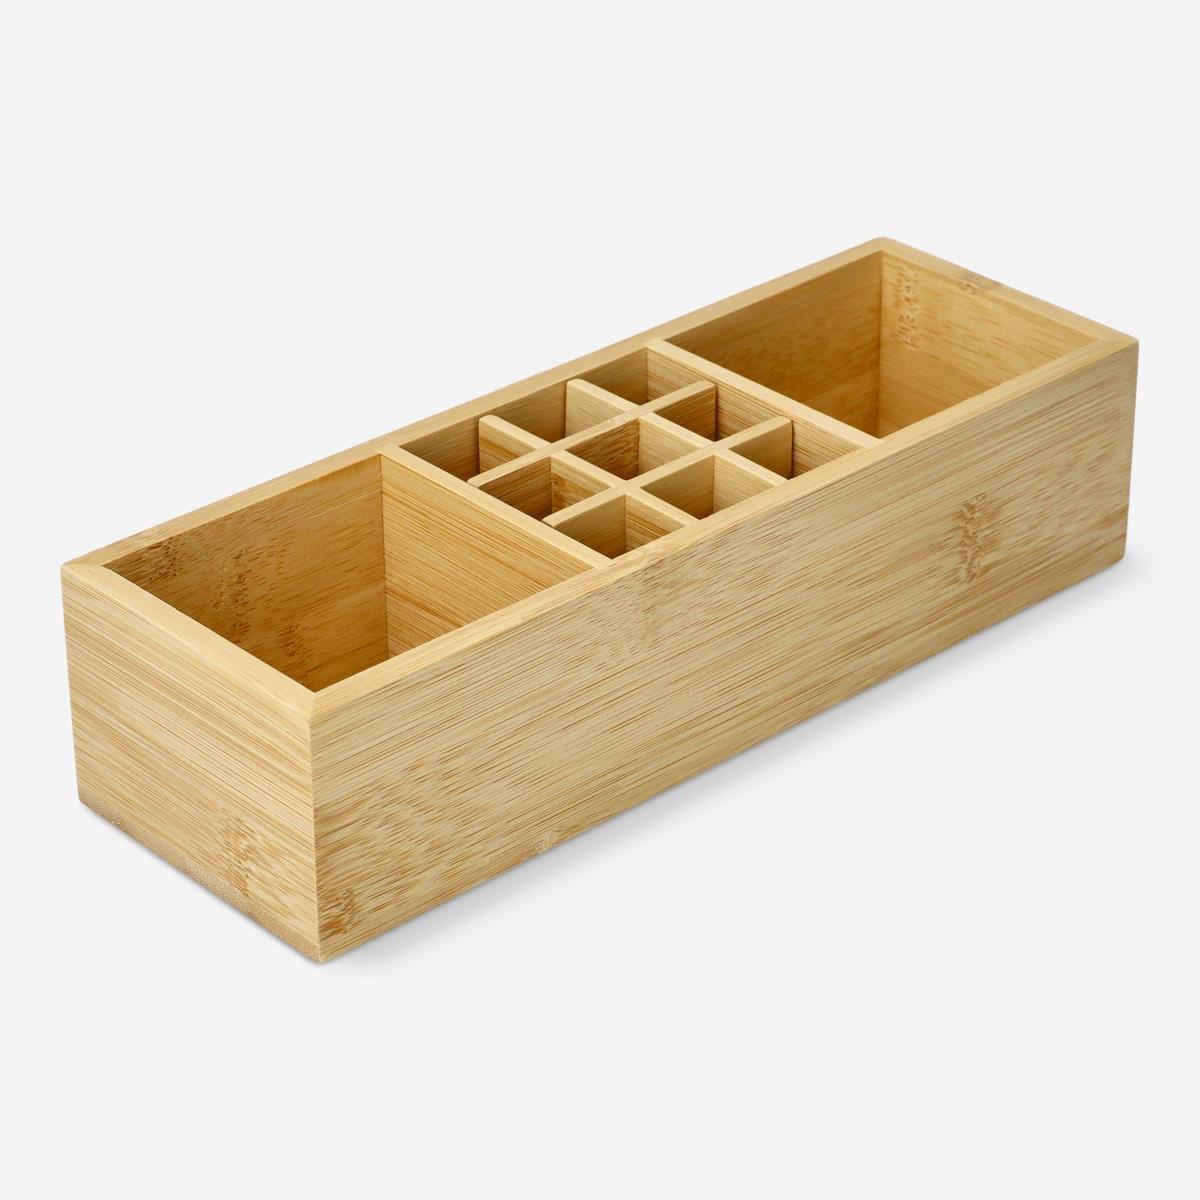 Wooden organizer tray